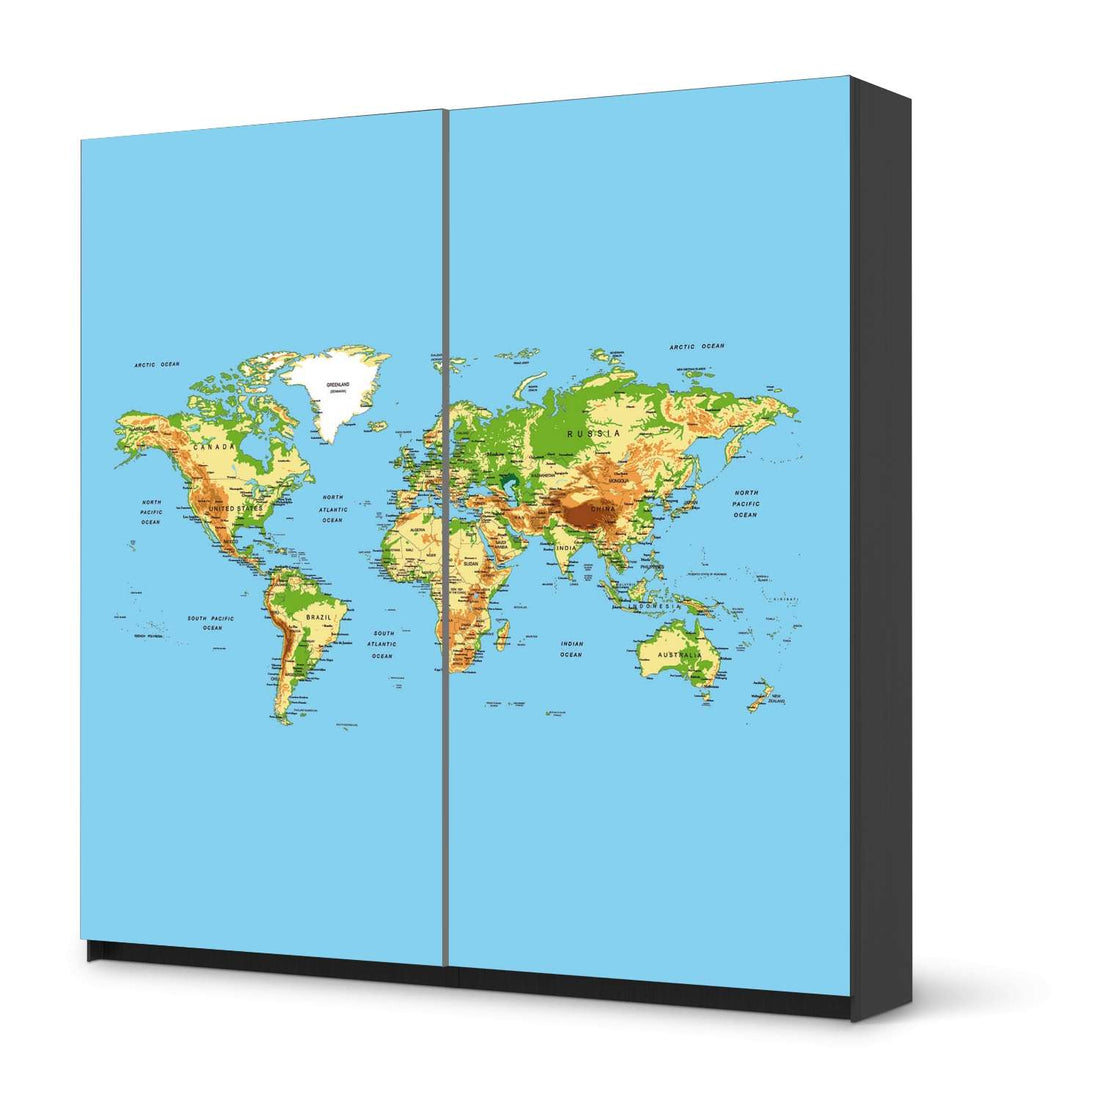 Möbel Klebefolie Geografische Weltkarte - IKEA Pax Schrank 201 cm Höhe - Schiebetür - schwarz